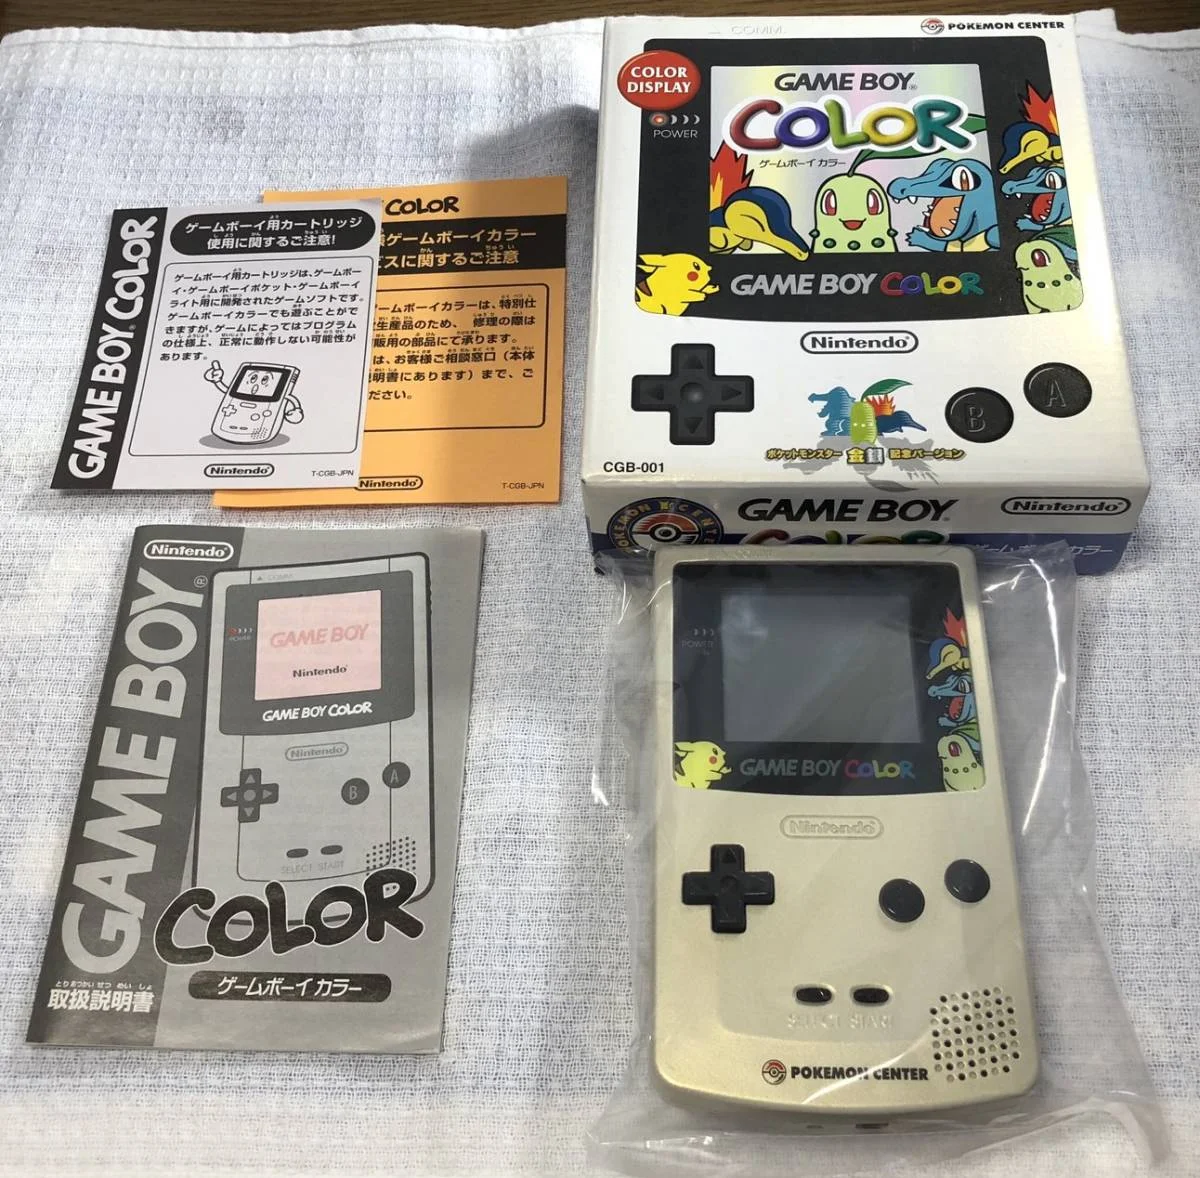  Nintendo Game Boy Color Pokemon Center Console